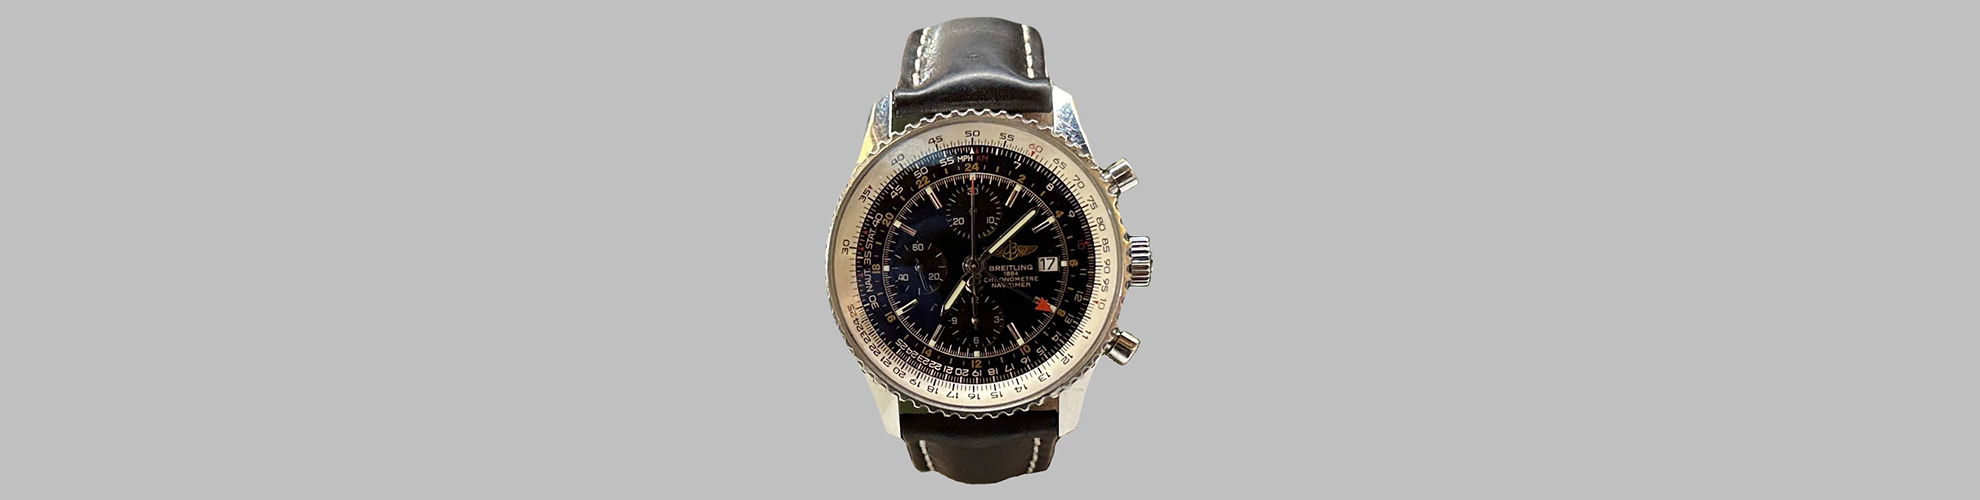 Eine Uhr von Breitling mit schwarzem Zifferblatt und silbernem Ziffernblatt.